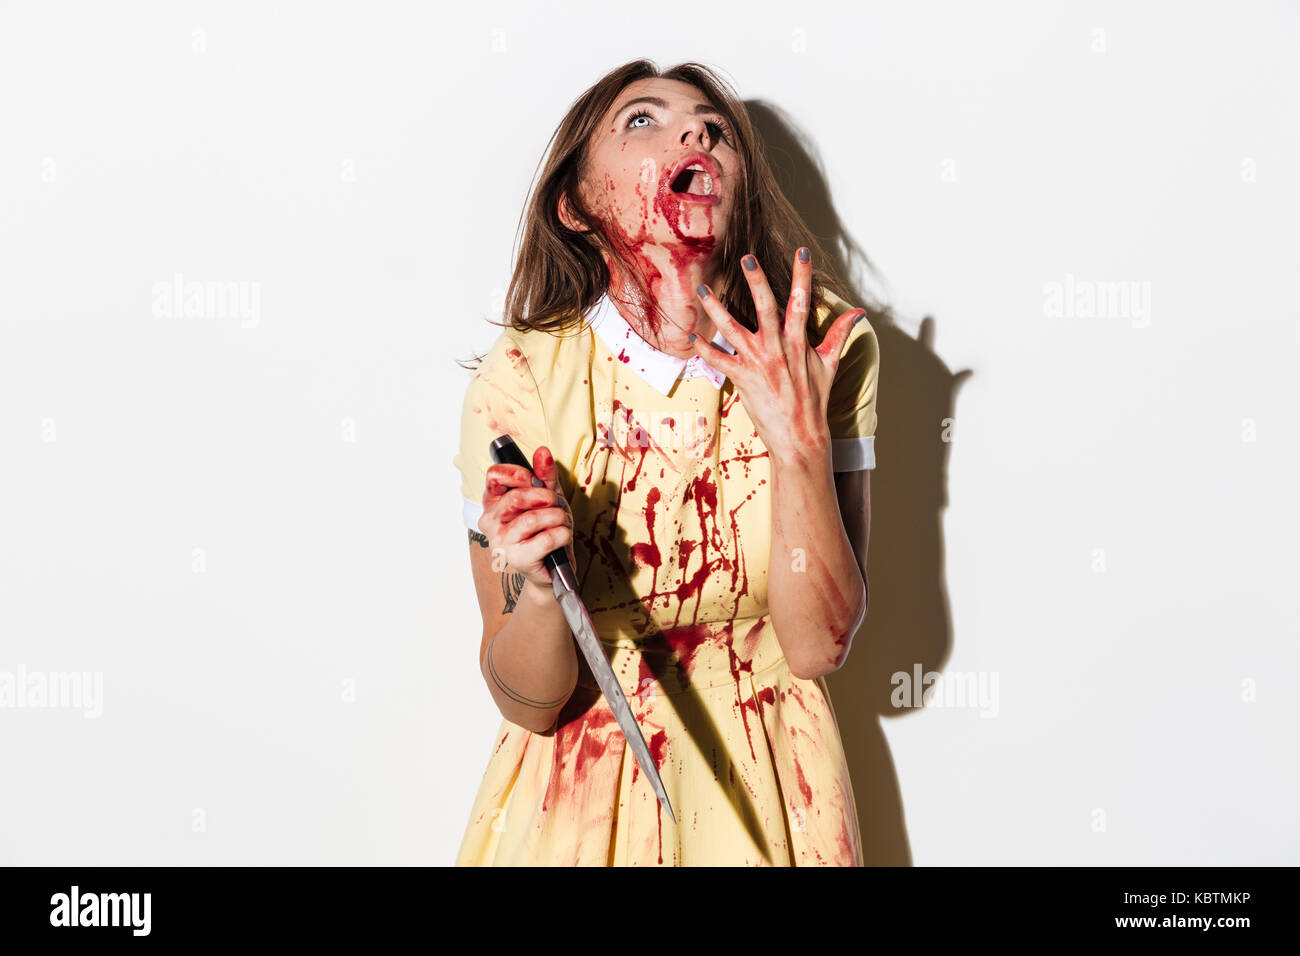 Spaventata mad zombie donna coperto di sangue in possesso di un coltello e guardando in alto isolato su sfondo bianco Foto Stock